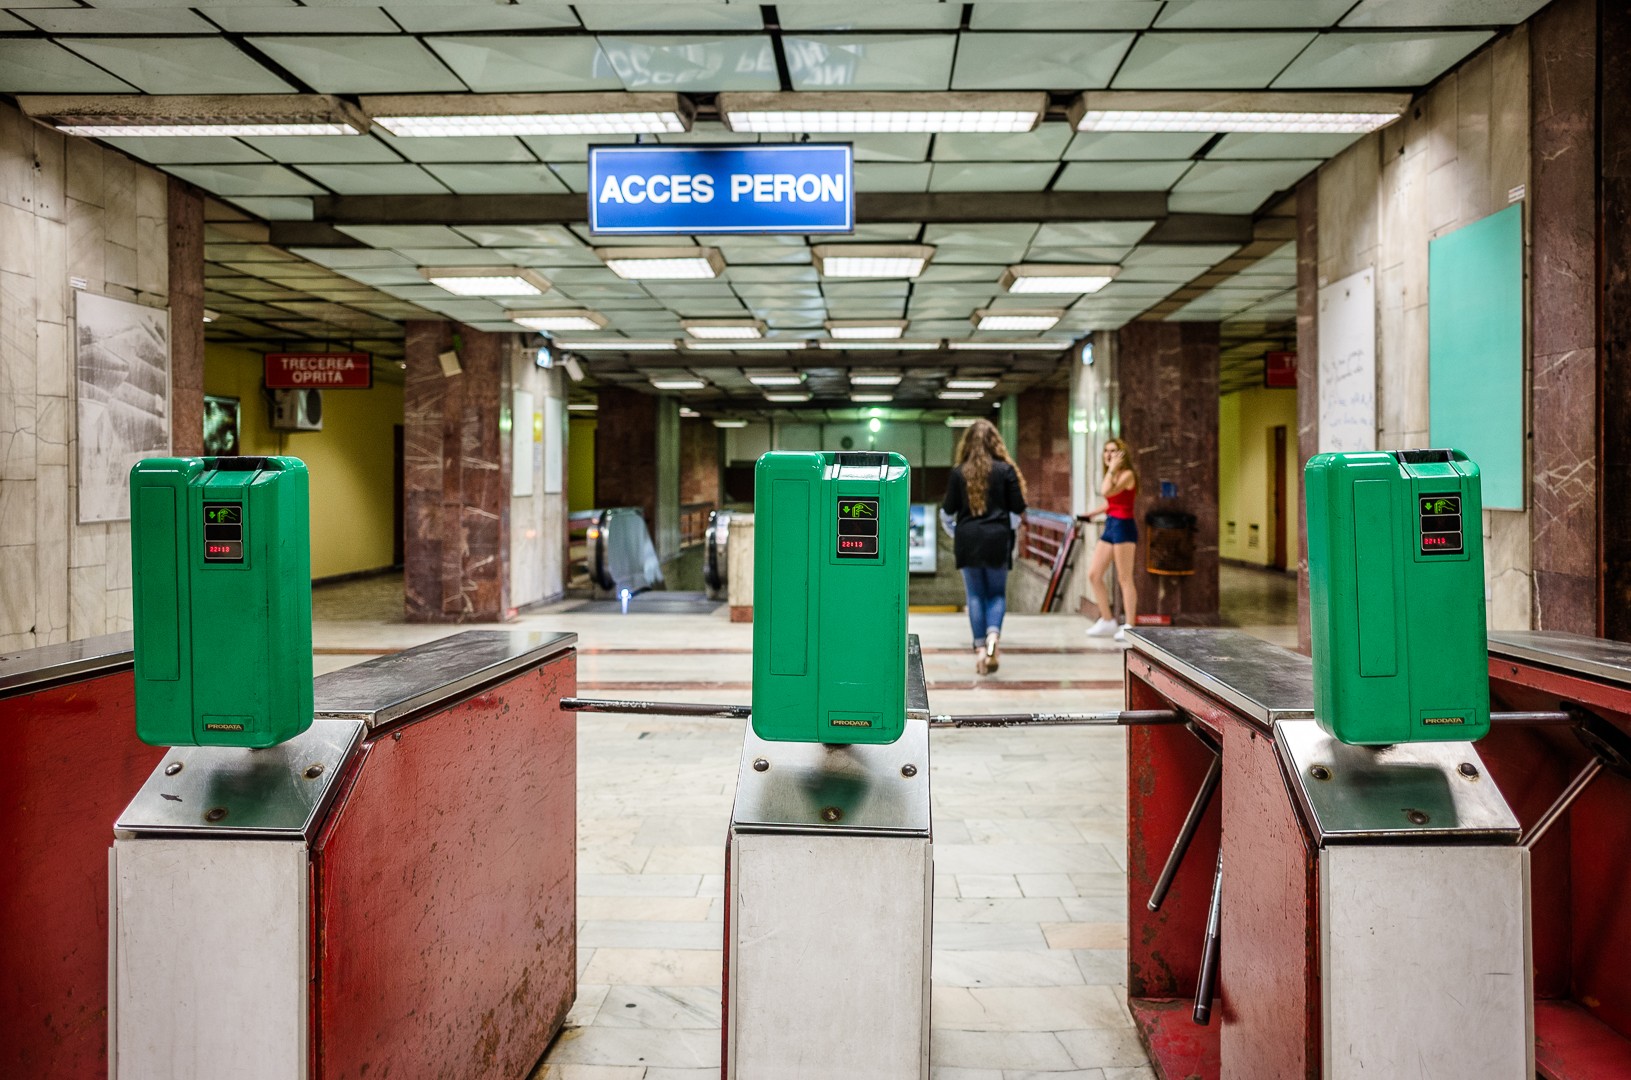 Turnicheții vechi - Stația de metrou Tineretului